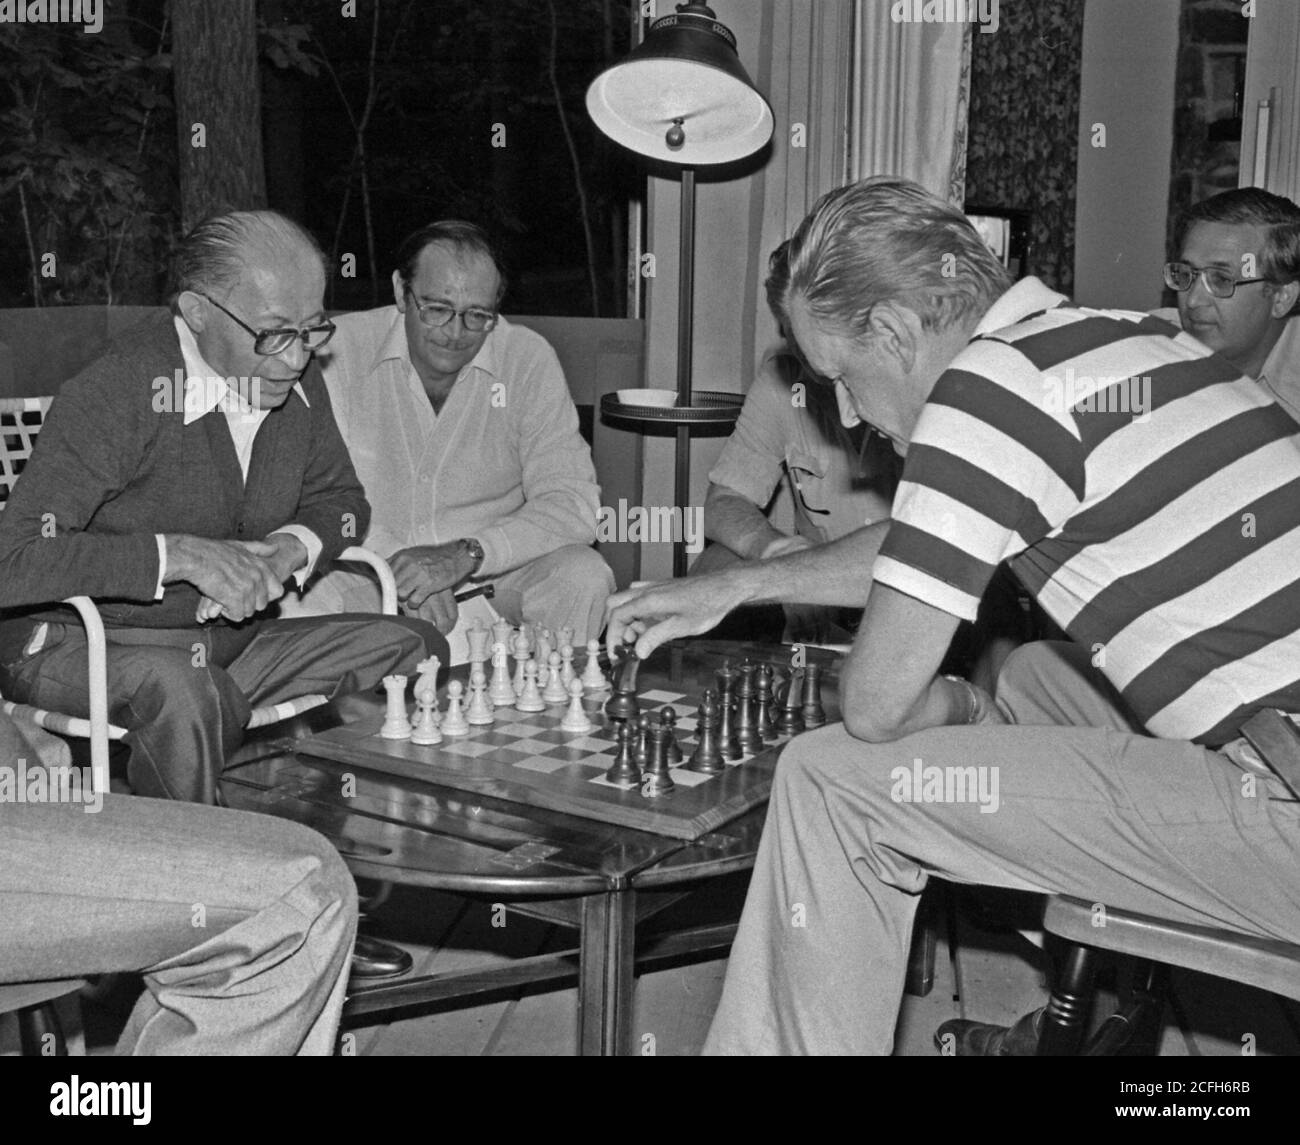 Menahem Begin et Zbigniew Brzezinski jouent aux échecs pendant le Camp David Summit. CA. 09/09/1978 Banque D'Images